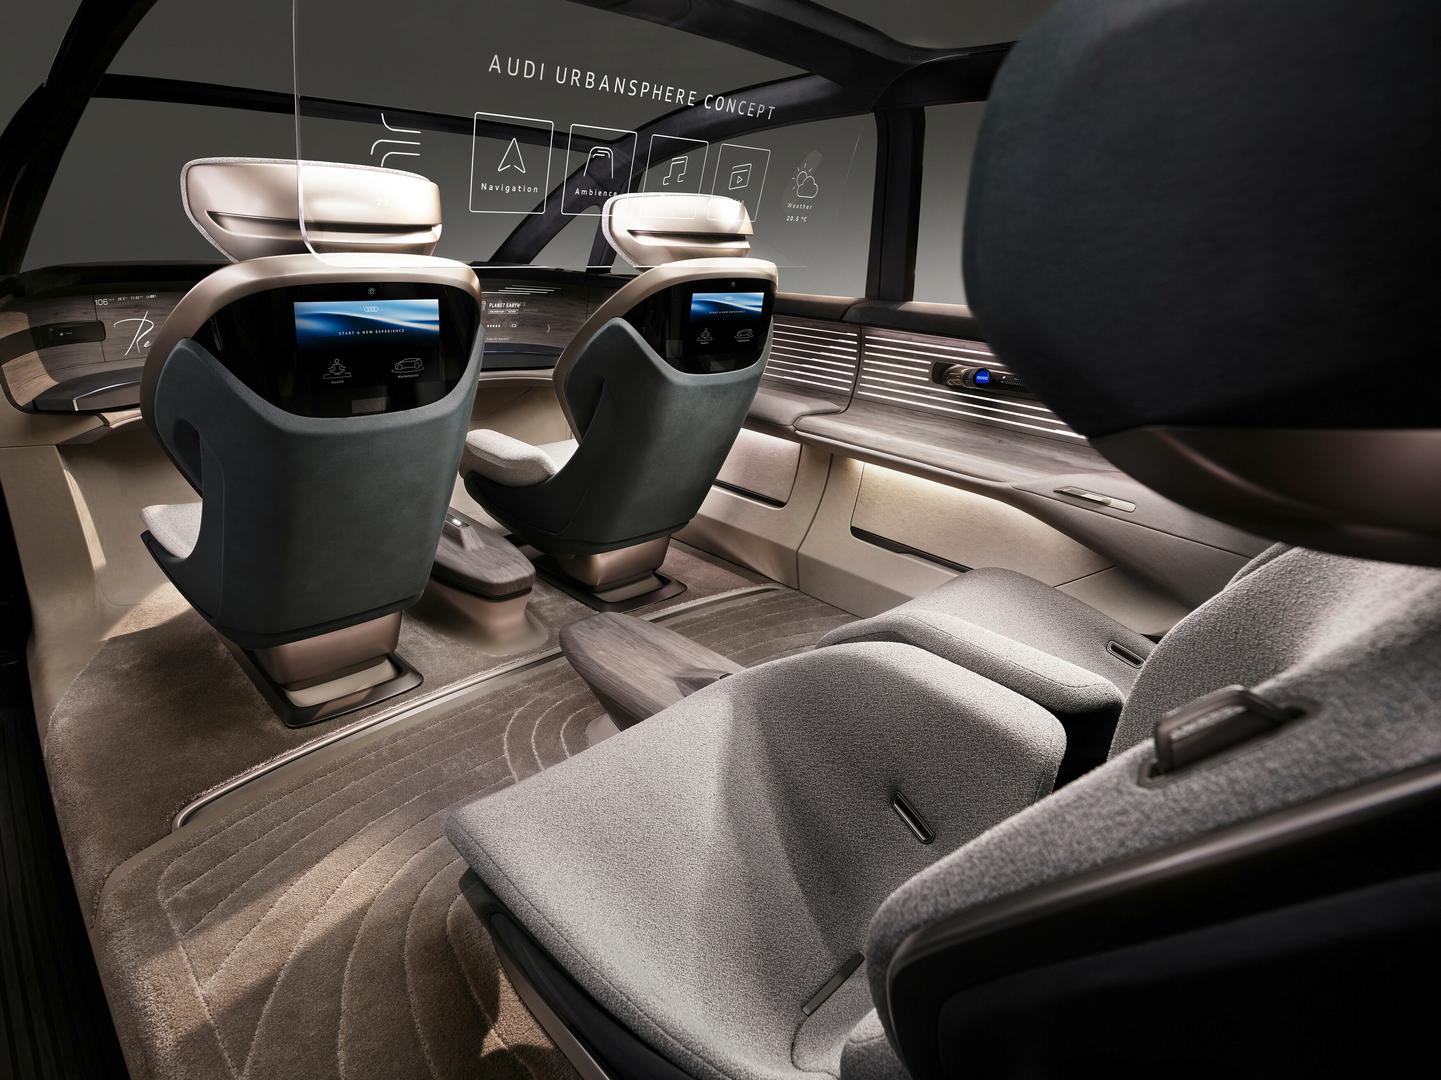 Audi urbansphere concept interior